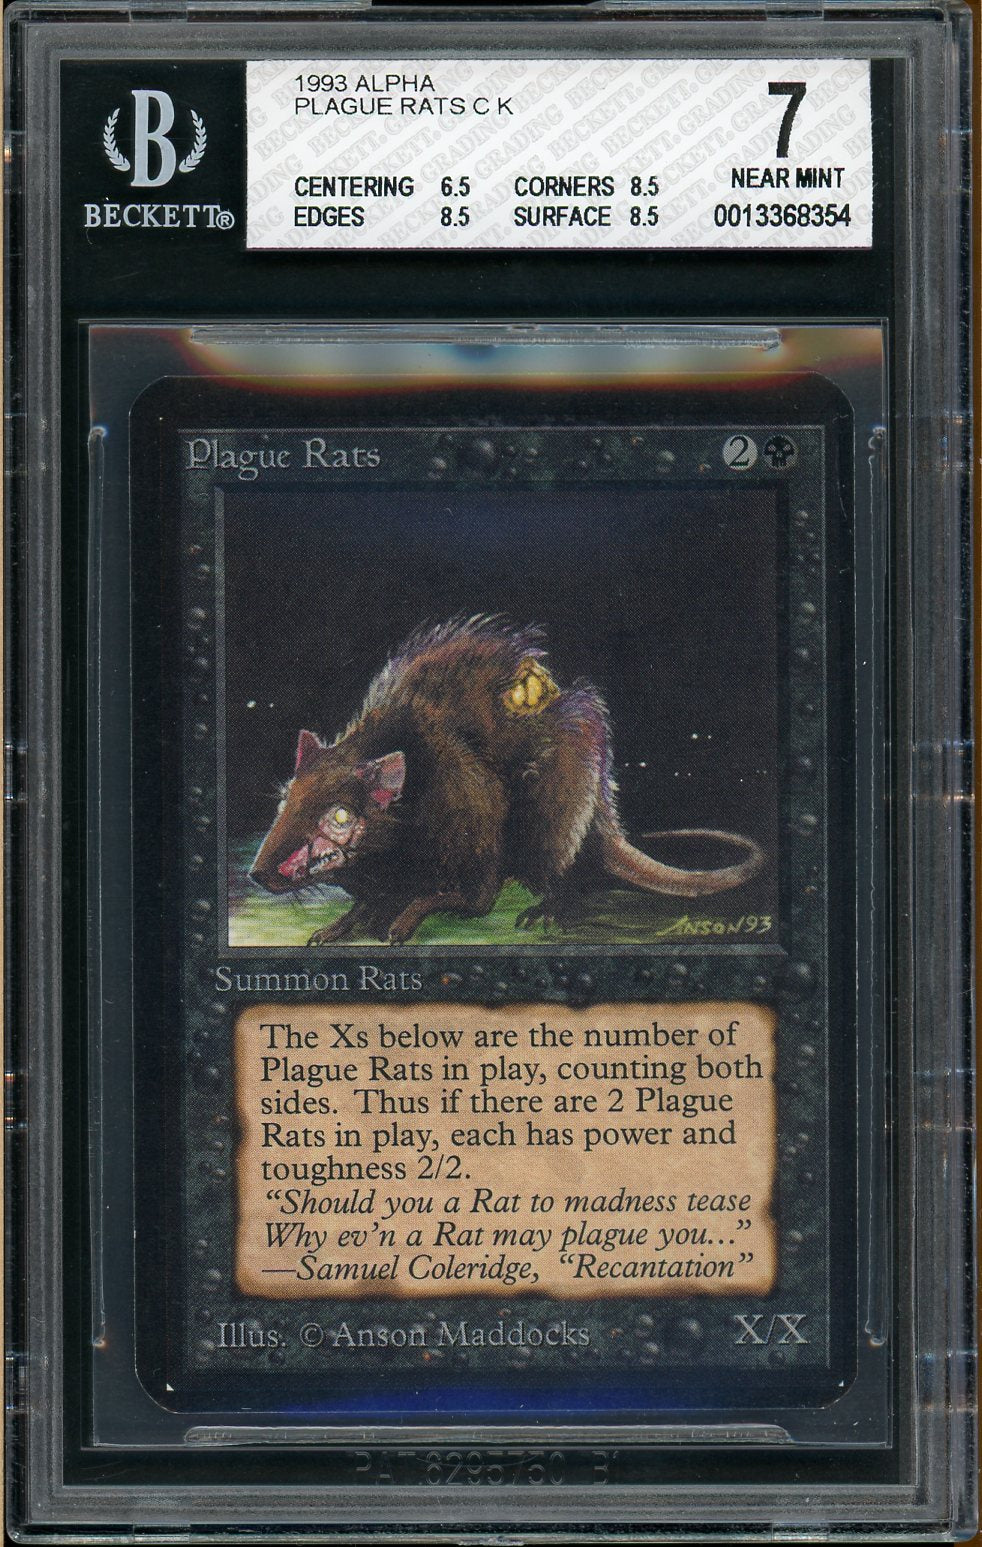 BGS (7.0) Plague Rats - 1993 Magic The Gathering [Alpha] (#0013368354)